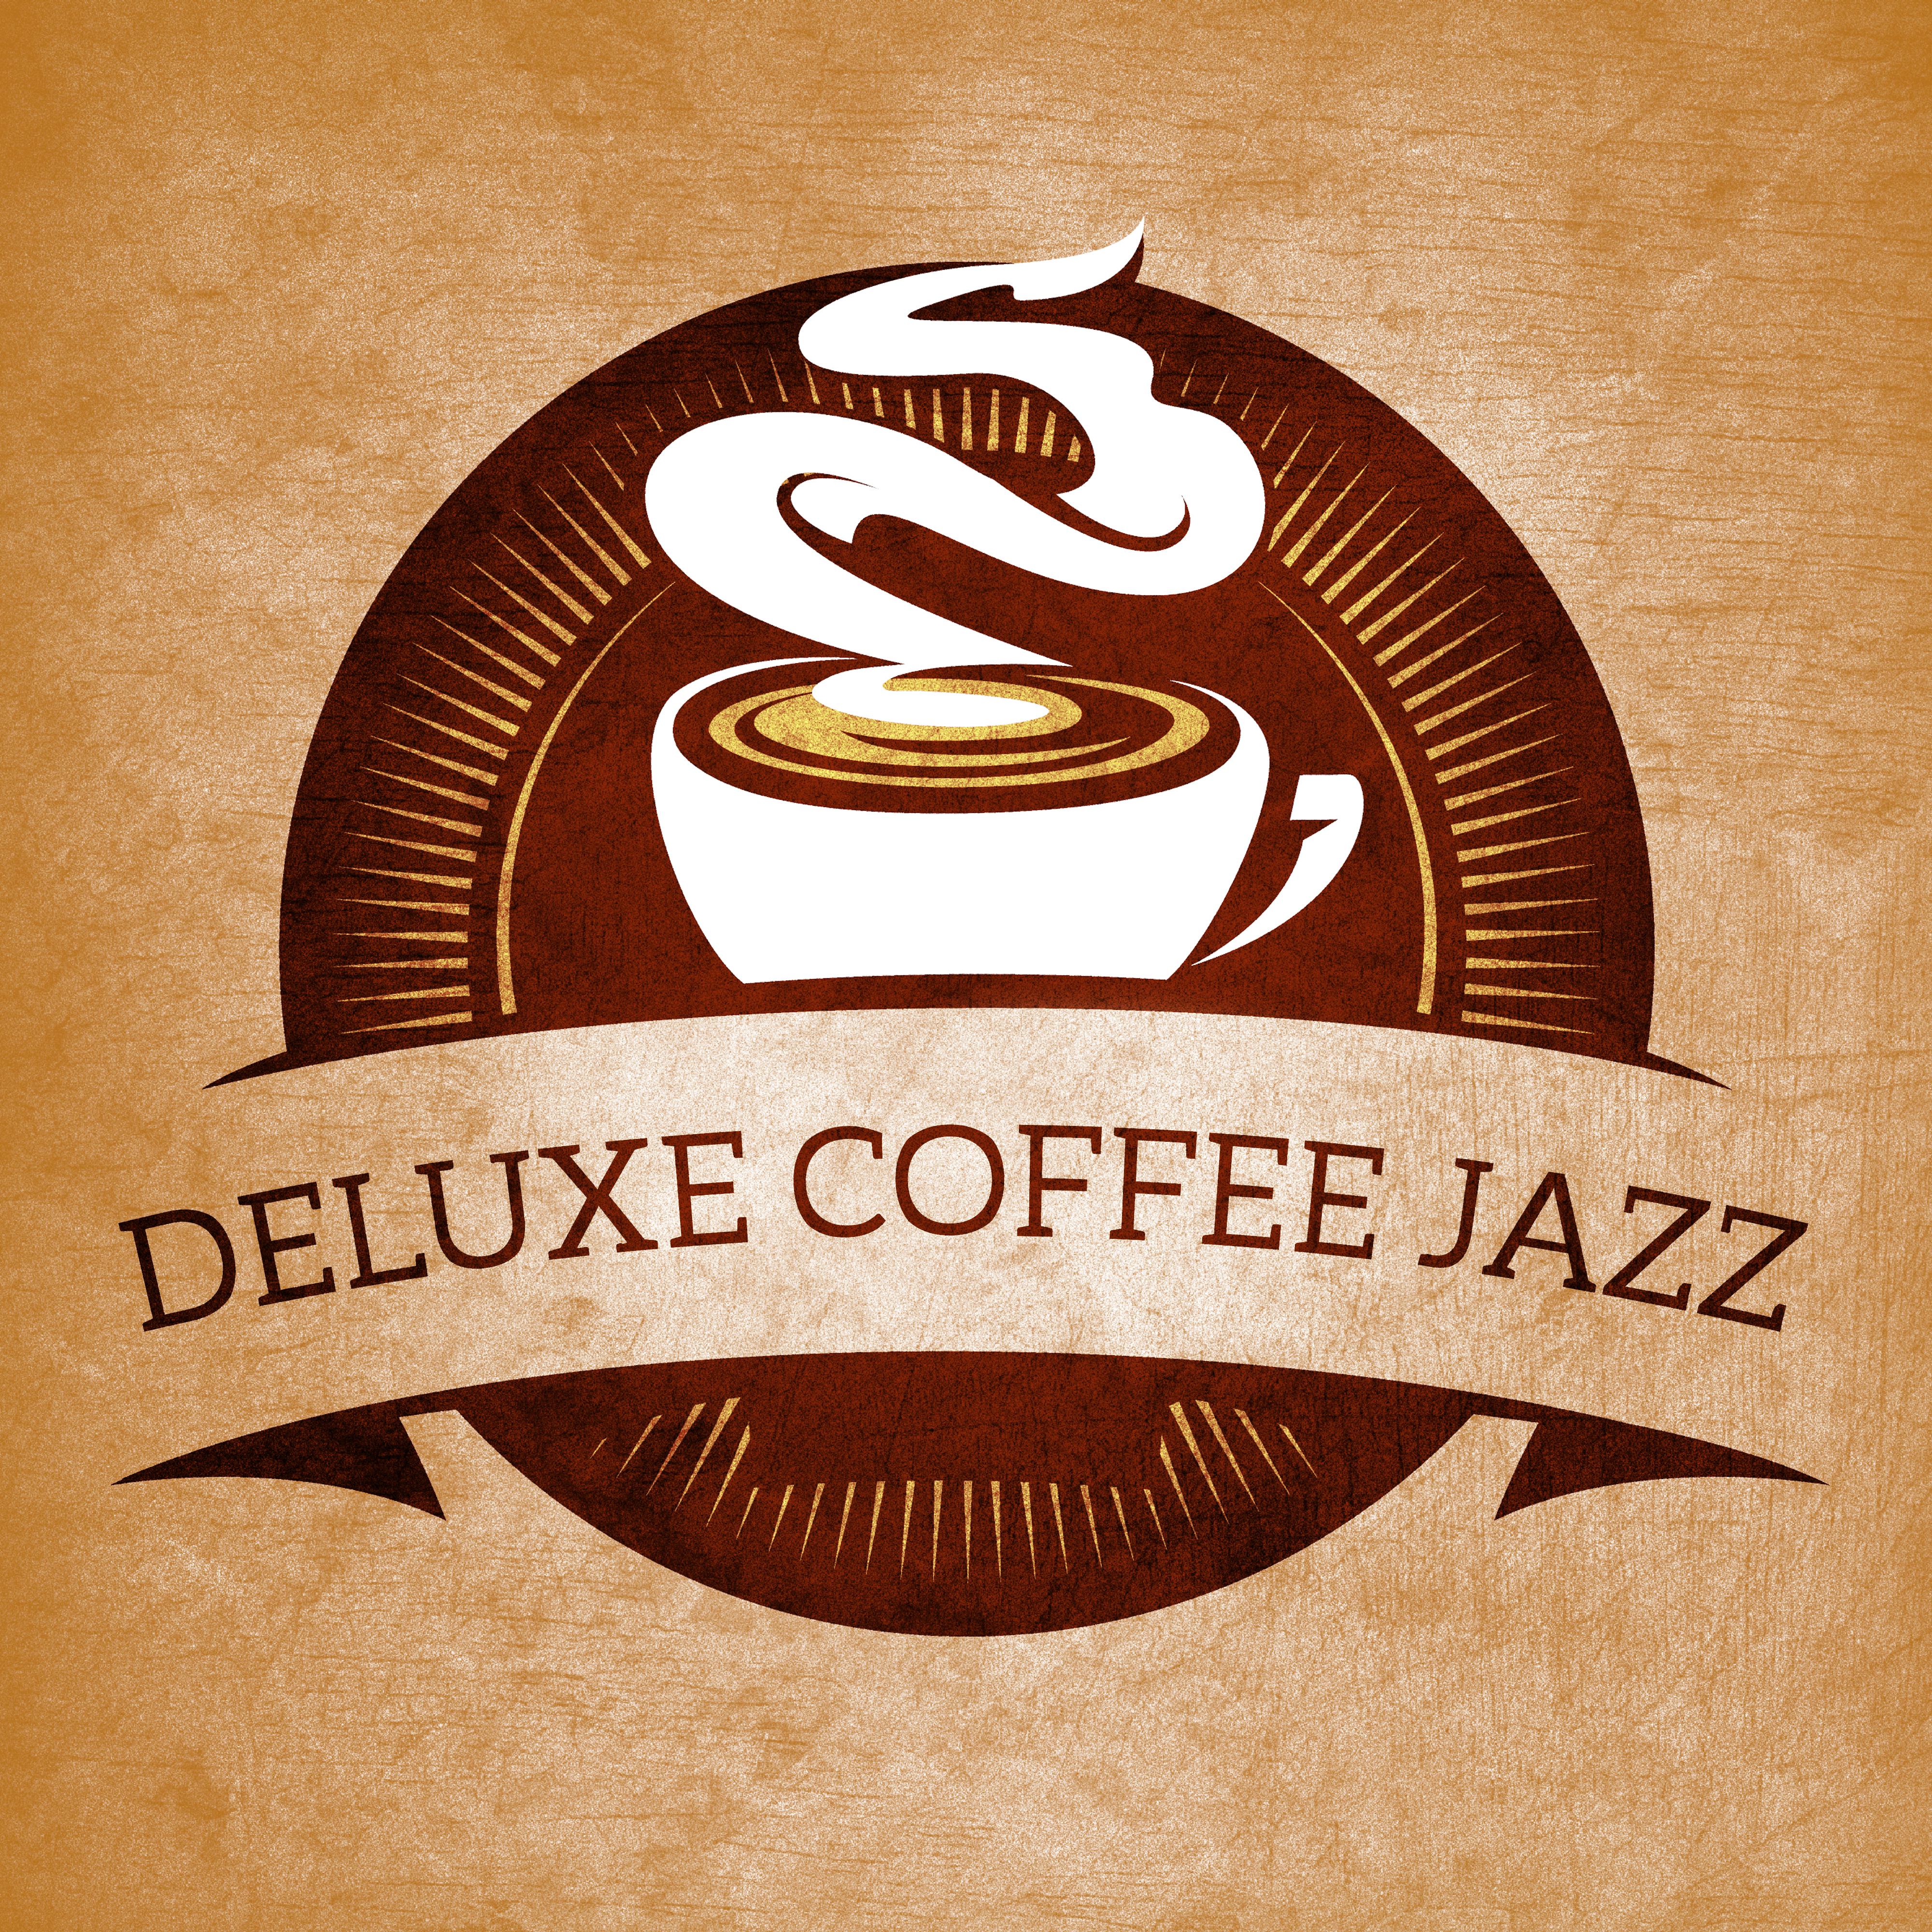 Deluxe Coffee Jazz